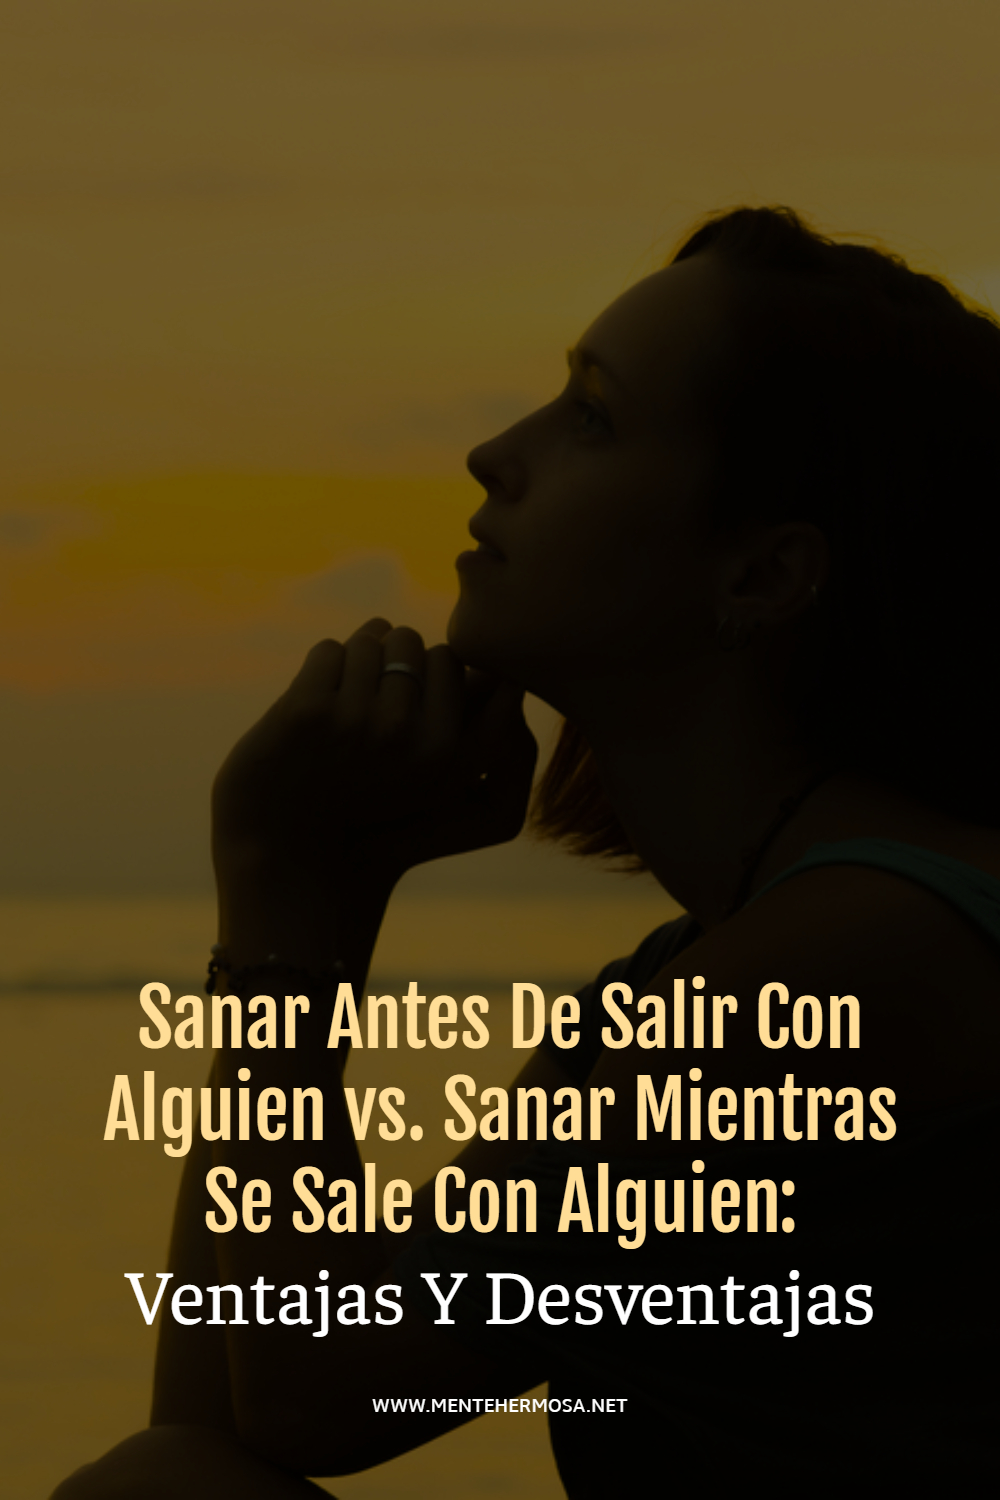 Sanar Antes De Salir Con Alguien vs. Sanar Mientras Se Sale Con Alguien: Ventajas Y Desventajas